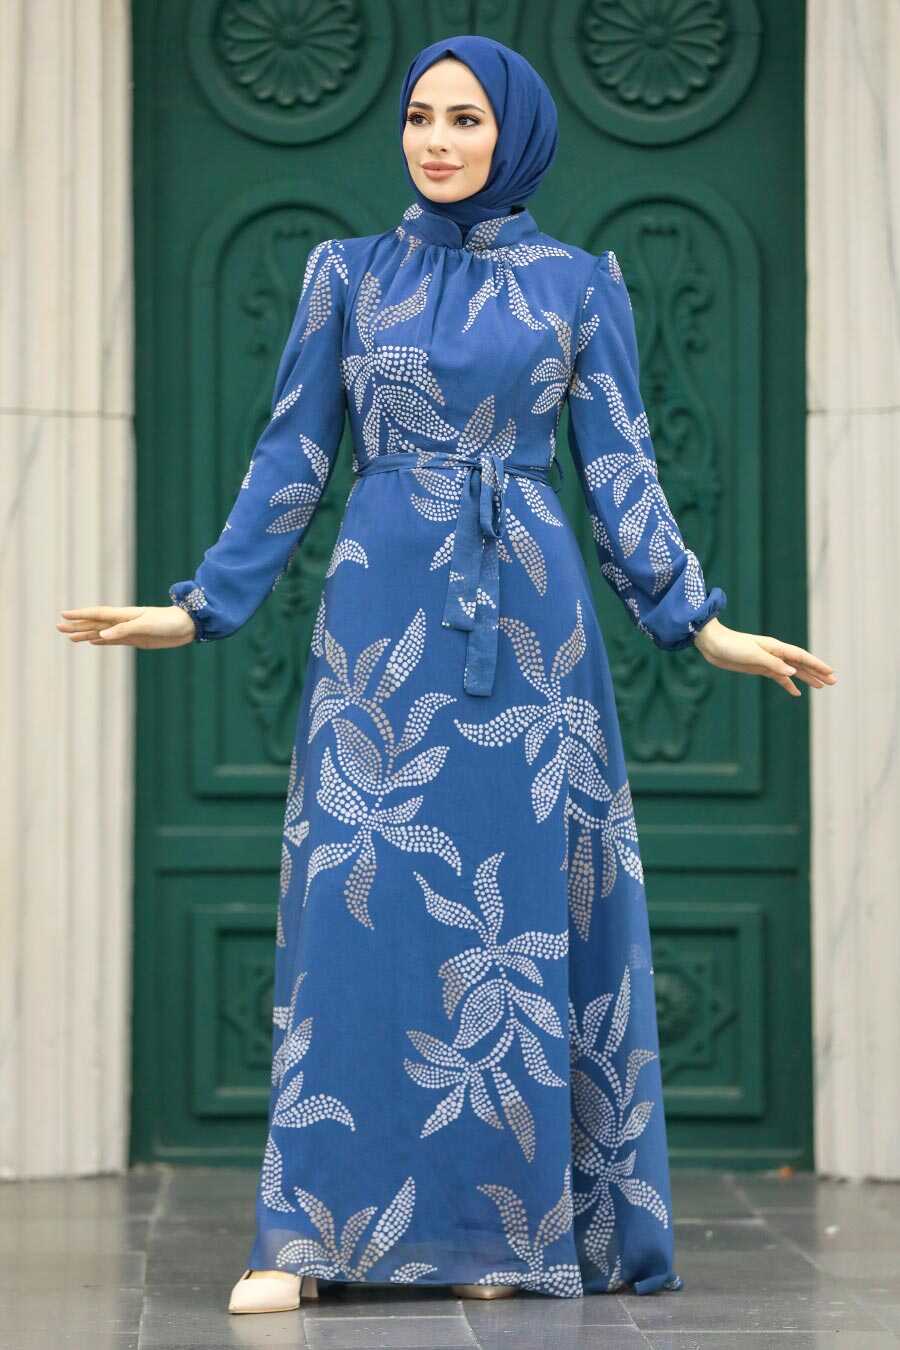 Ladies Dress Designs Images | Maharani Designer Boutique